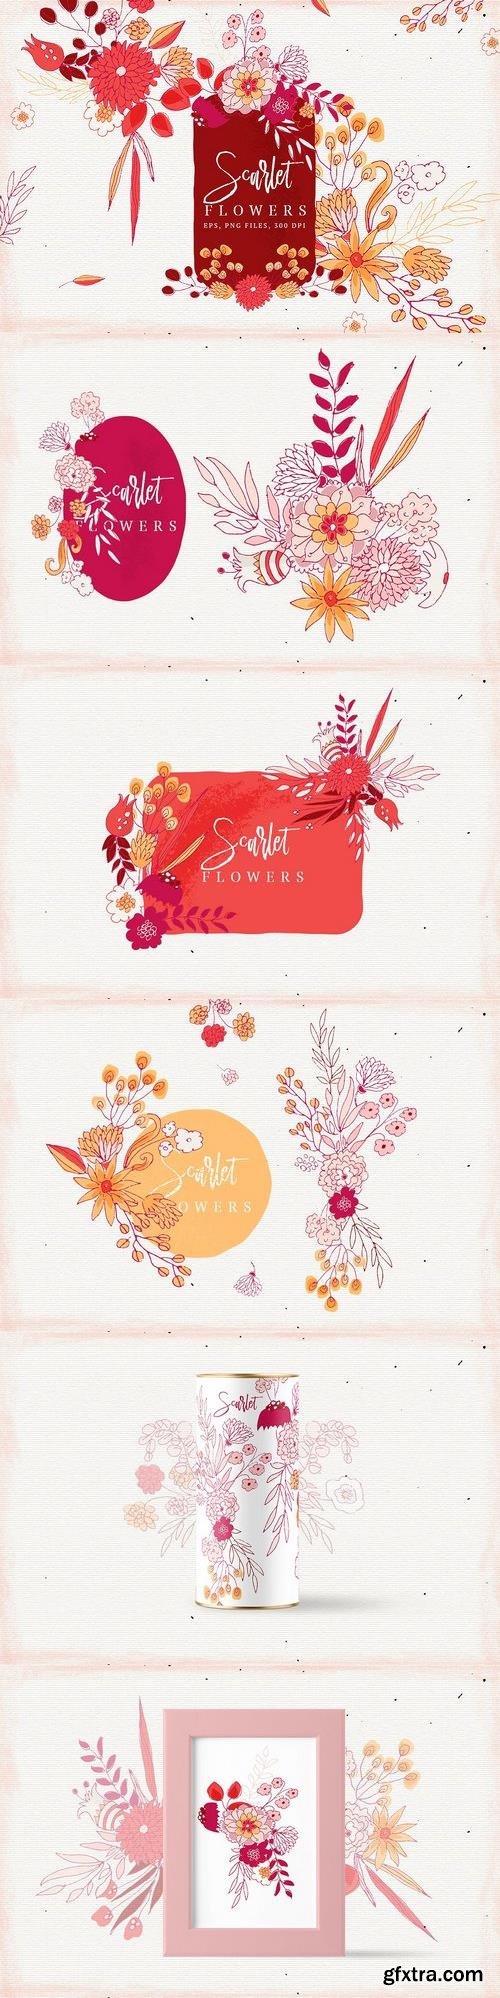 CM - Scarlet Flowers 1632471